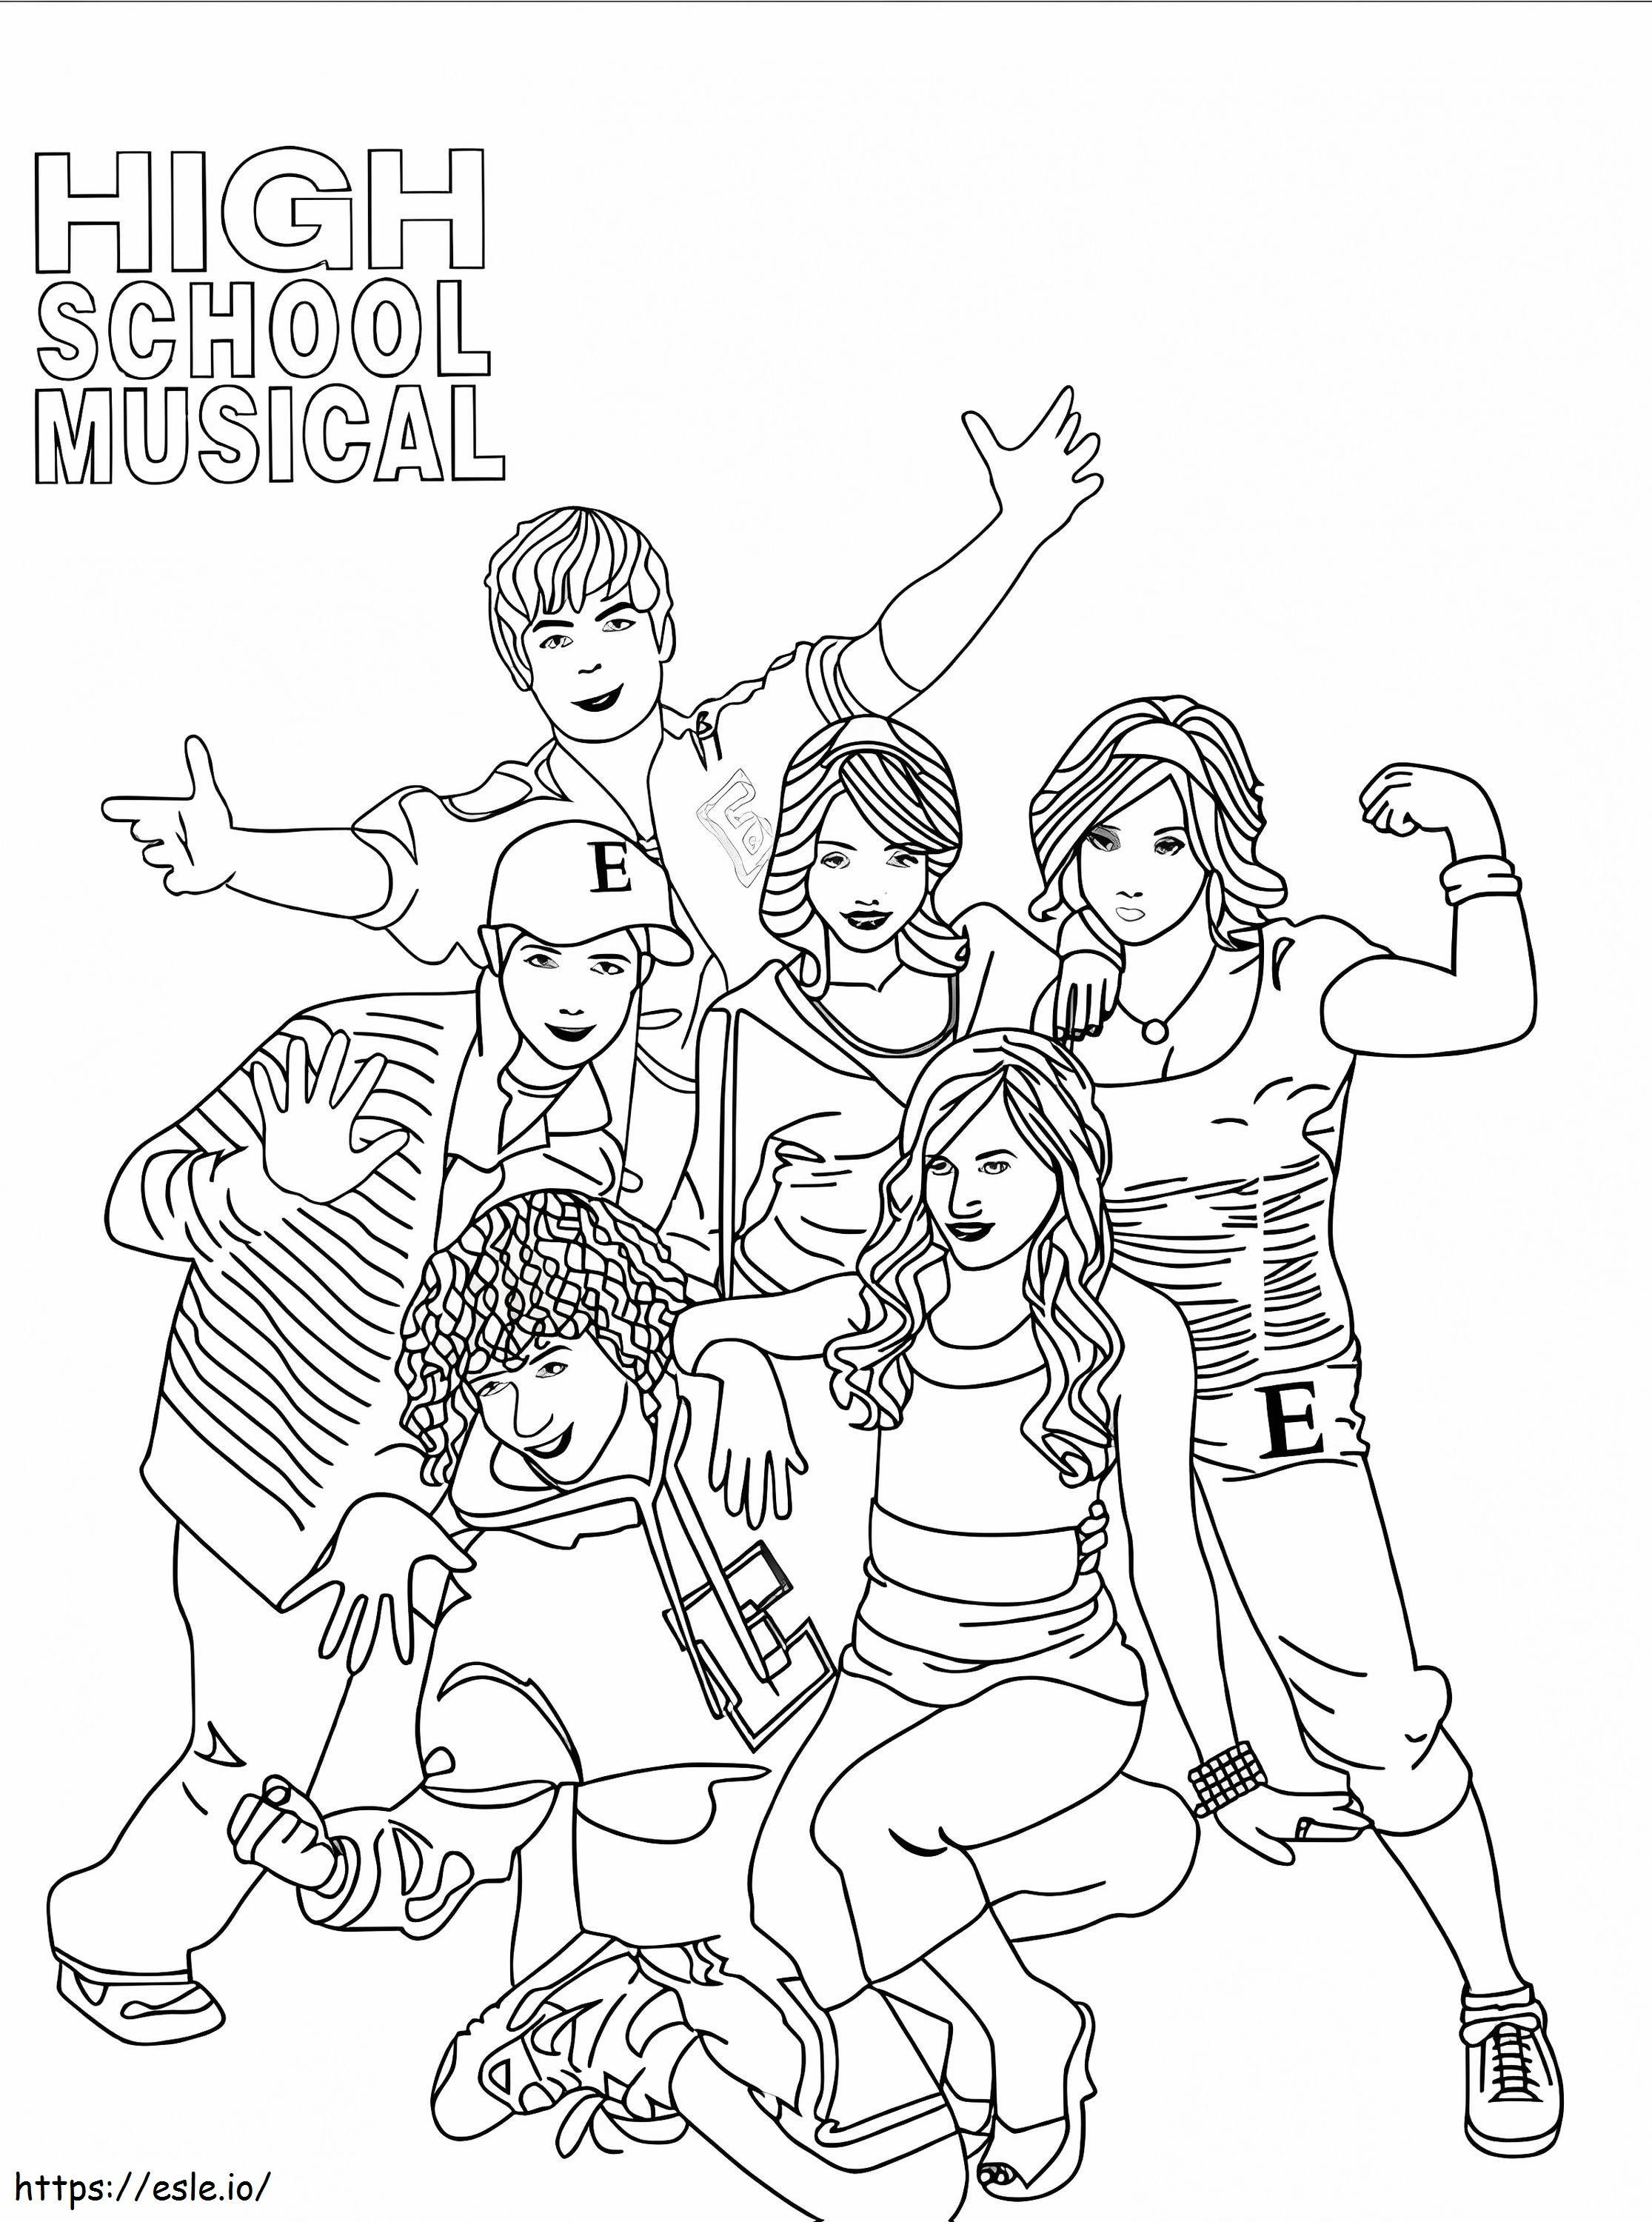 Personajes de High School Musical para colorear